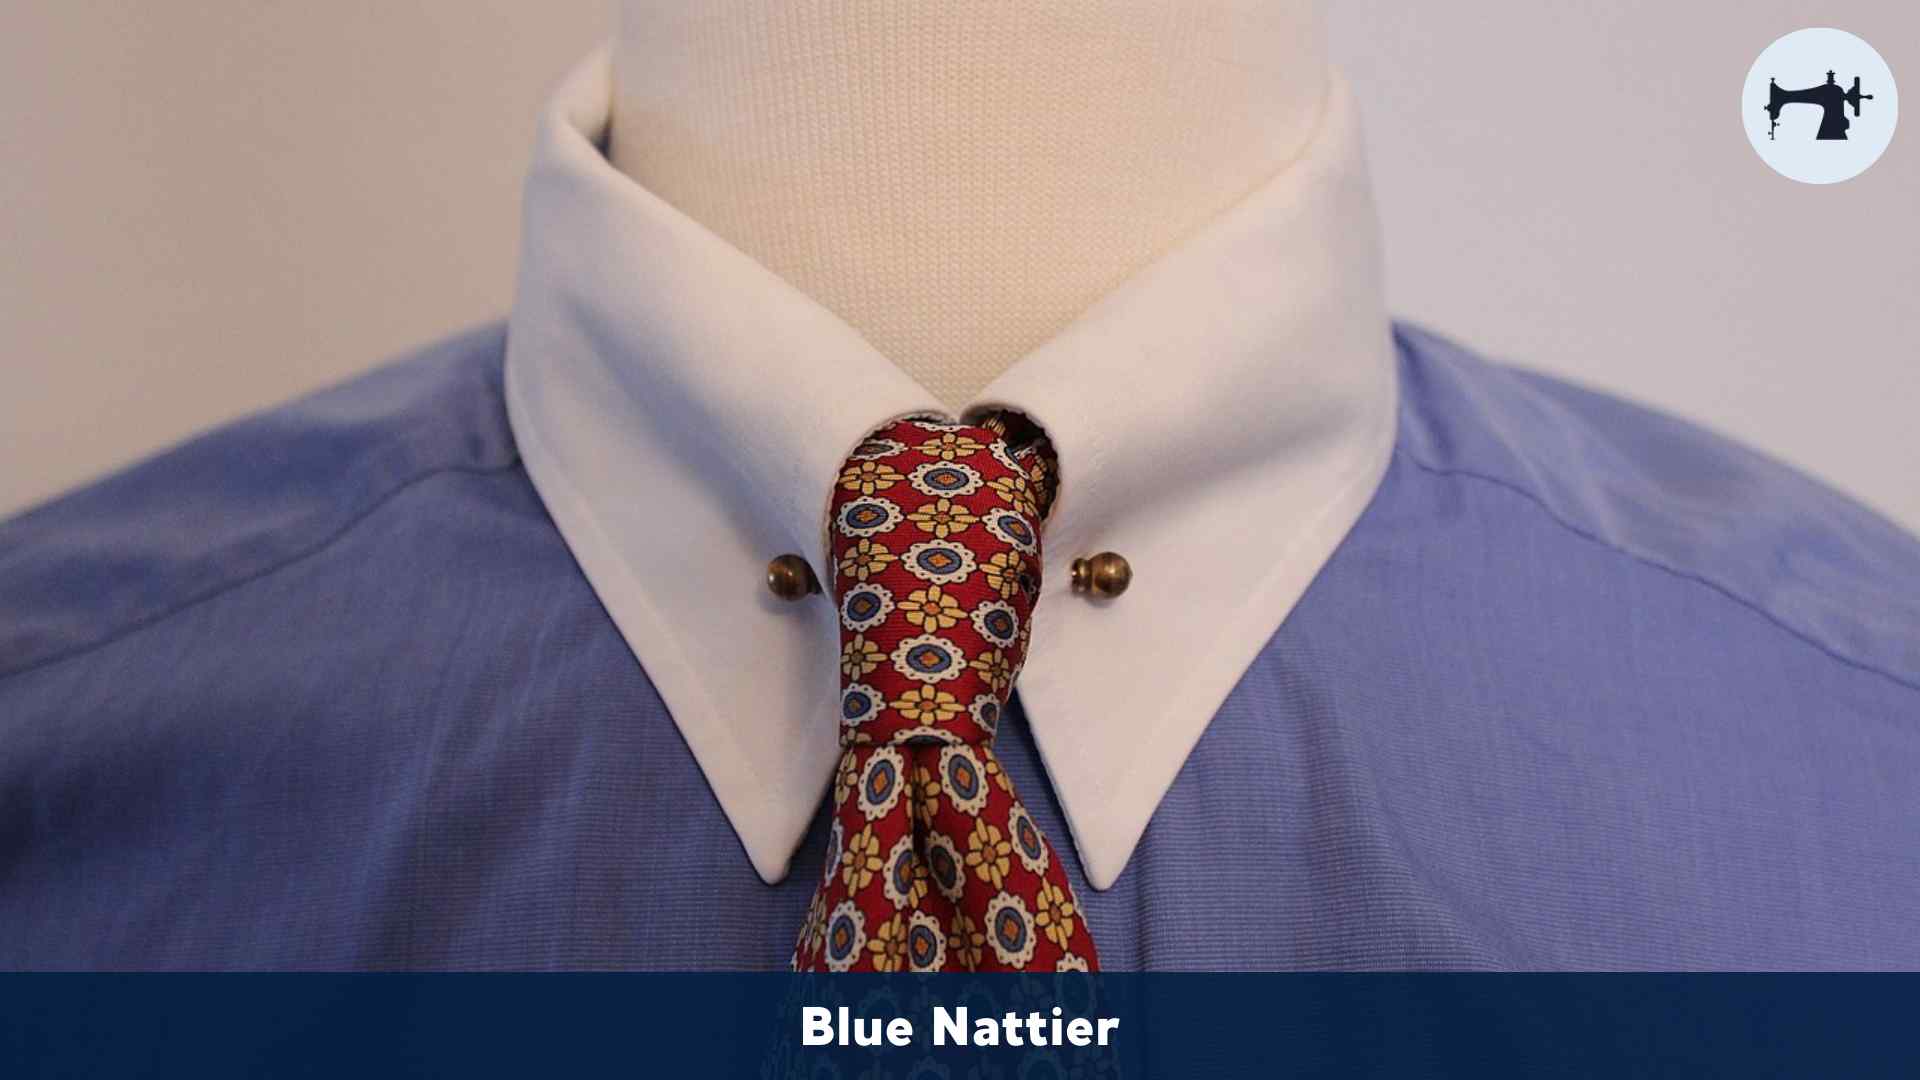 Todos de cuello camisa que existen - Blue Nattier